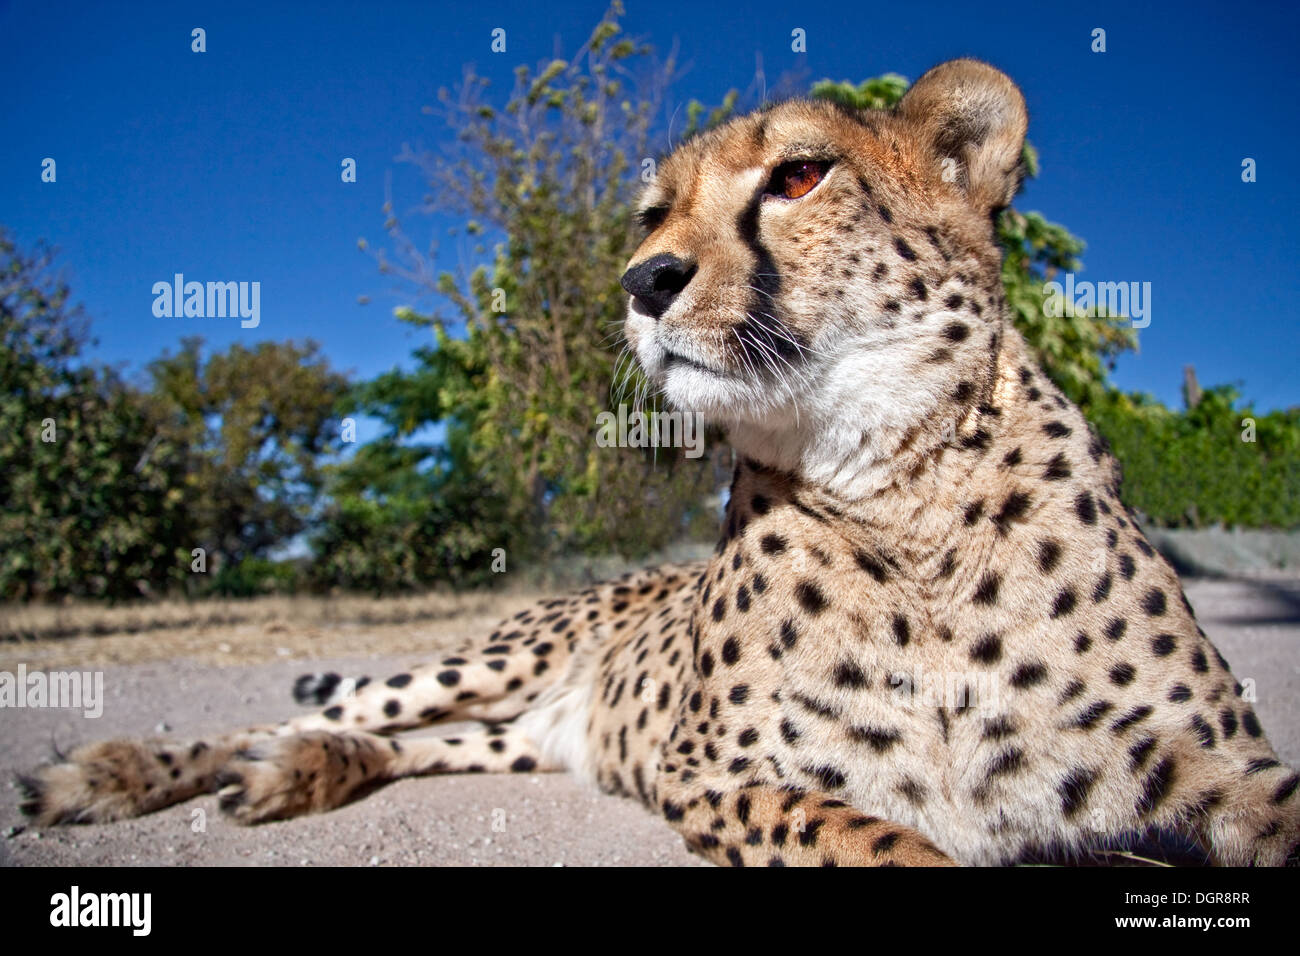 A cheetah sitting down Stock Photo